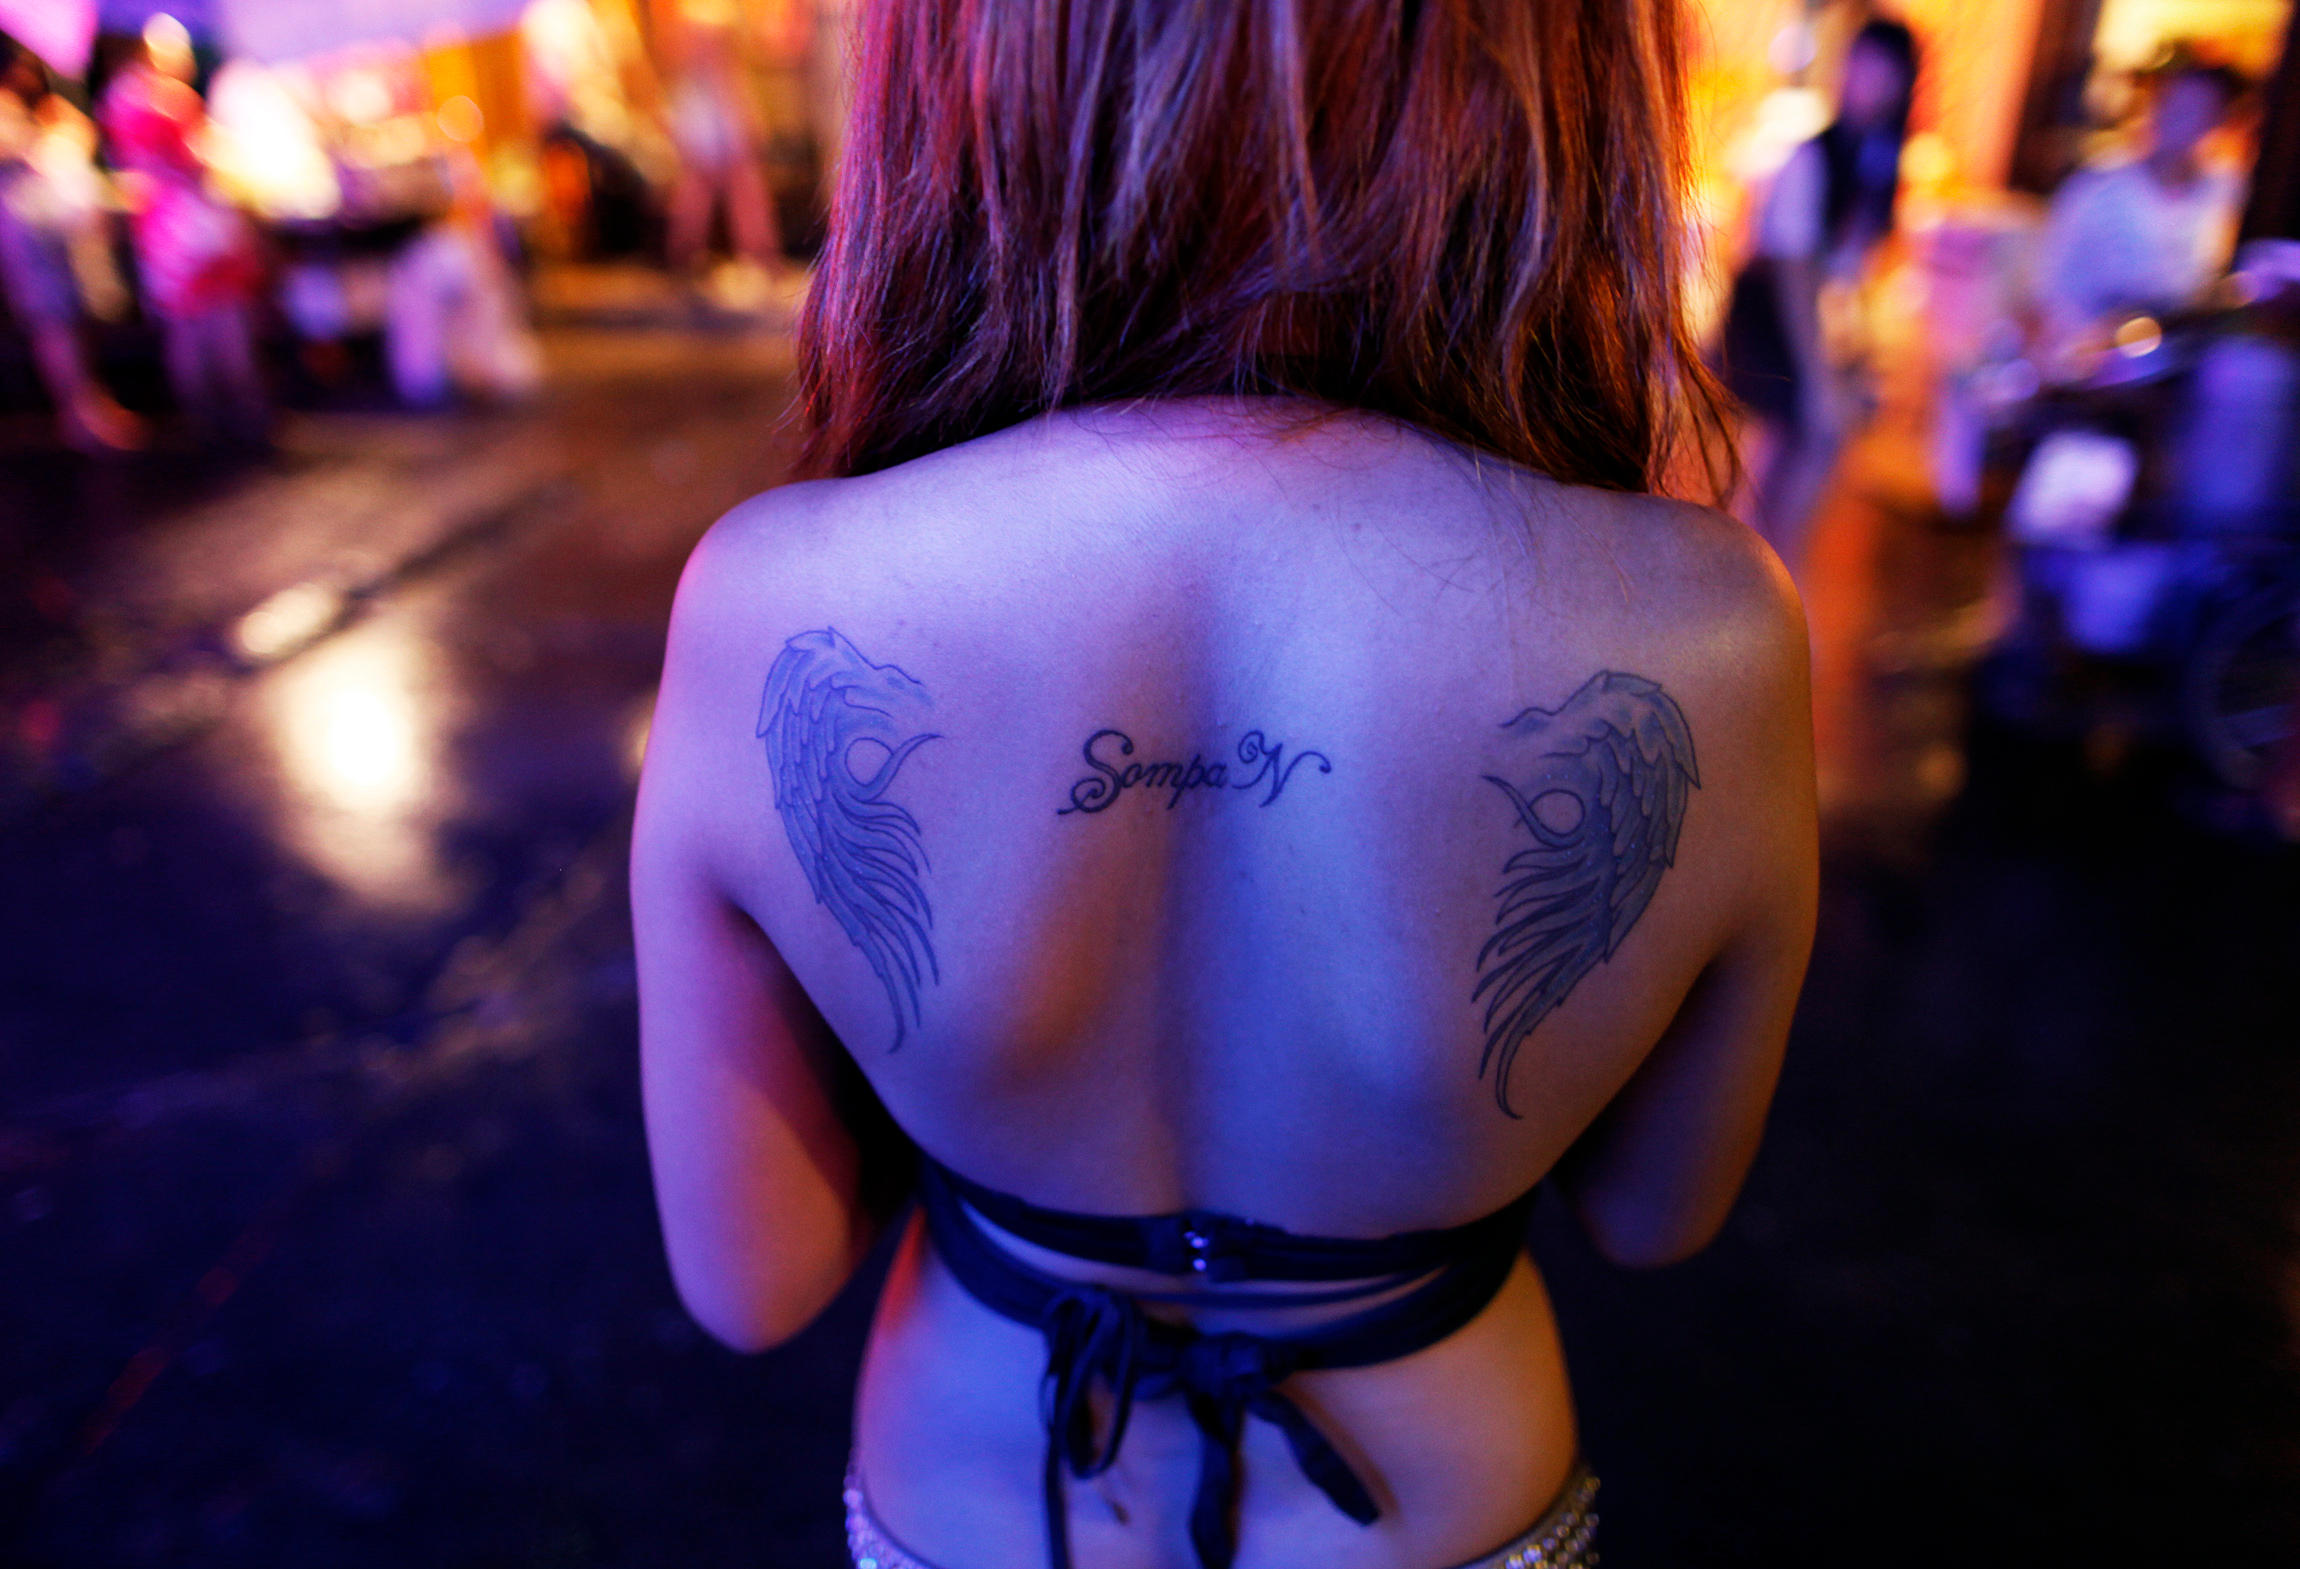 История возникновения символов татуировки, как знаков принадлежности к преступному сообществу